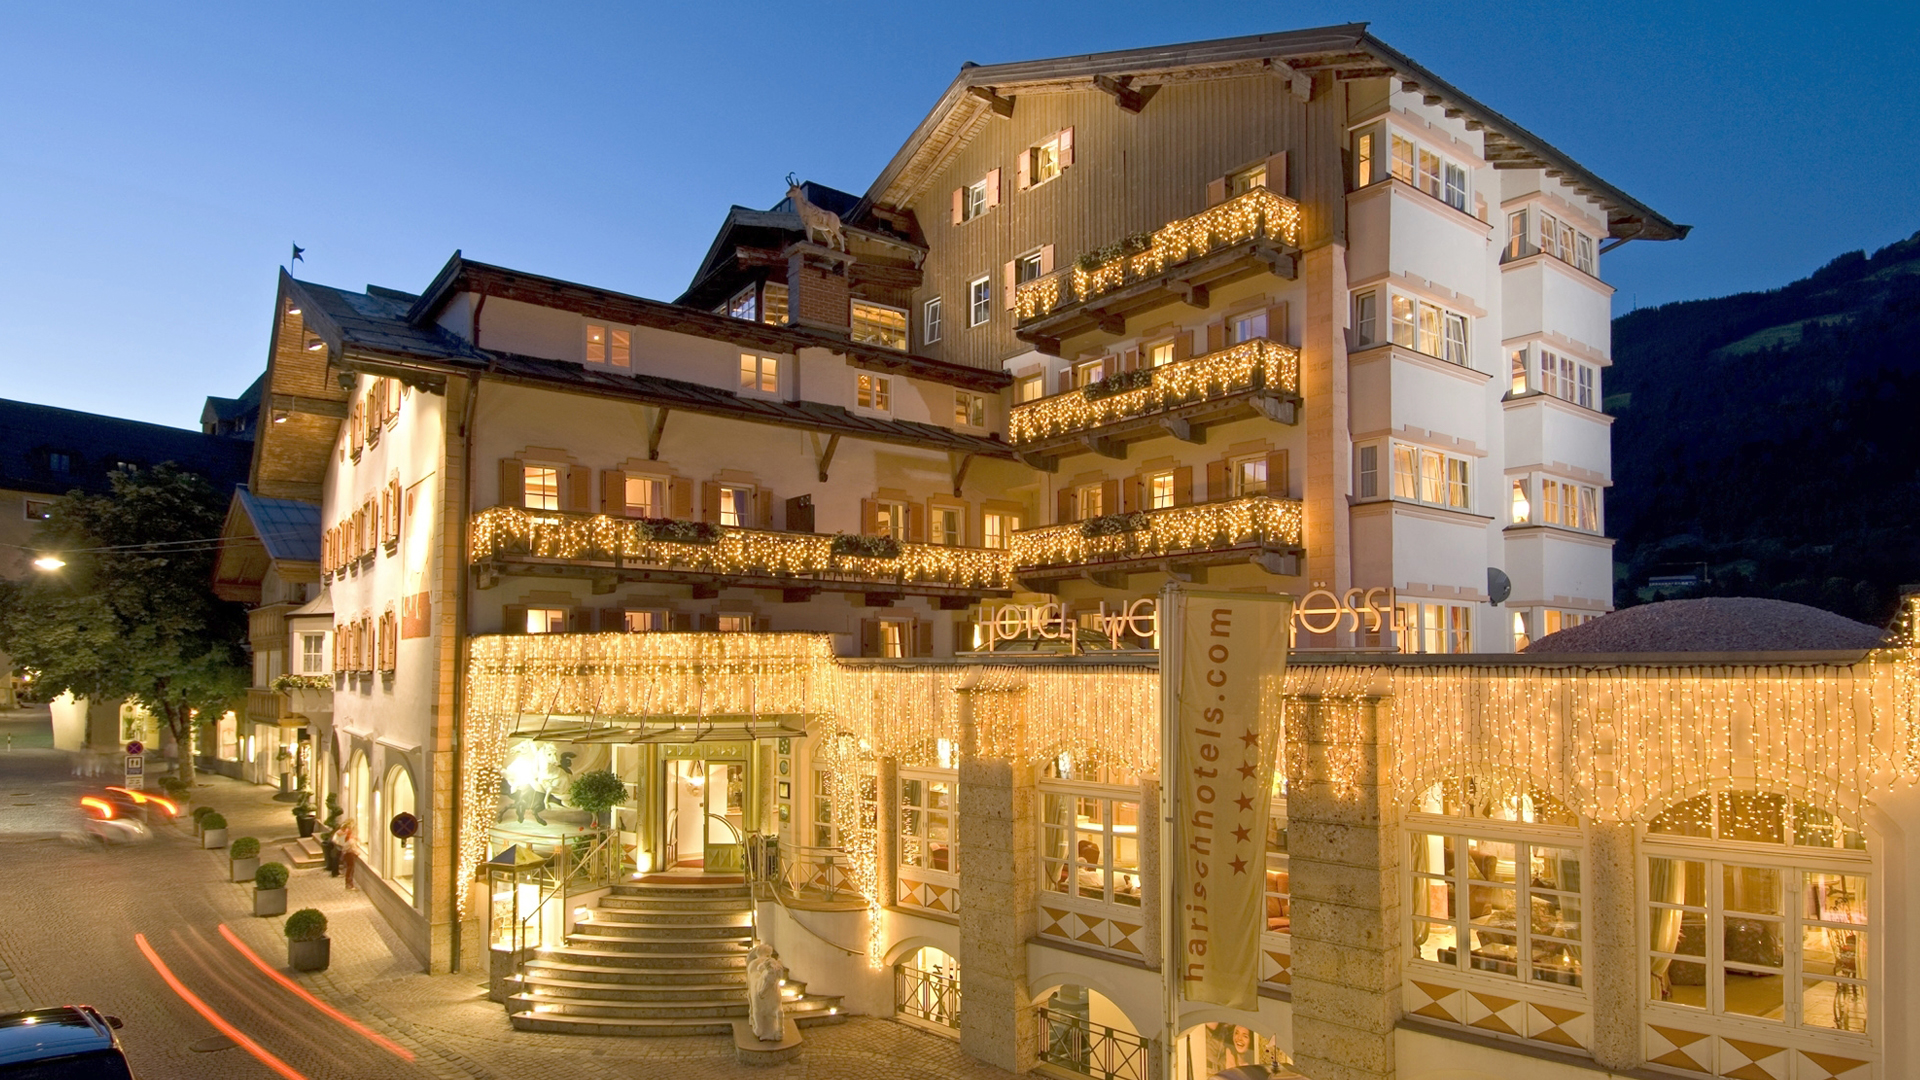 Hotel Weisses Rössl Austria